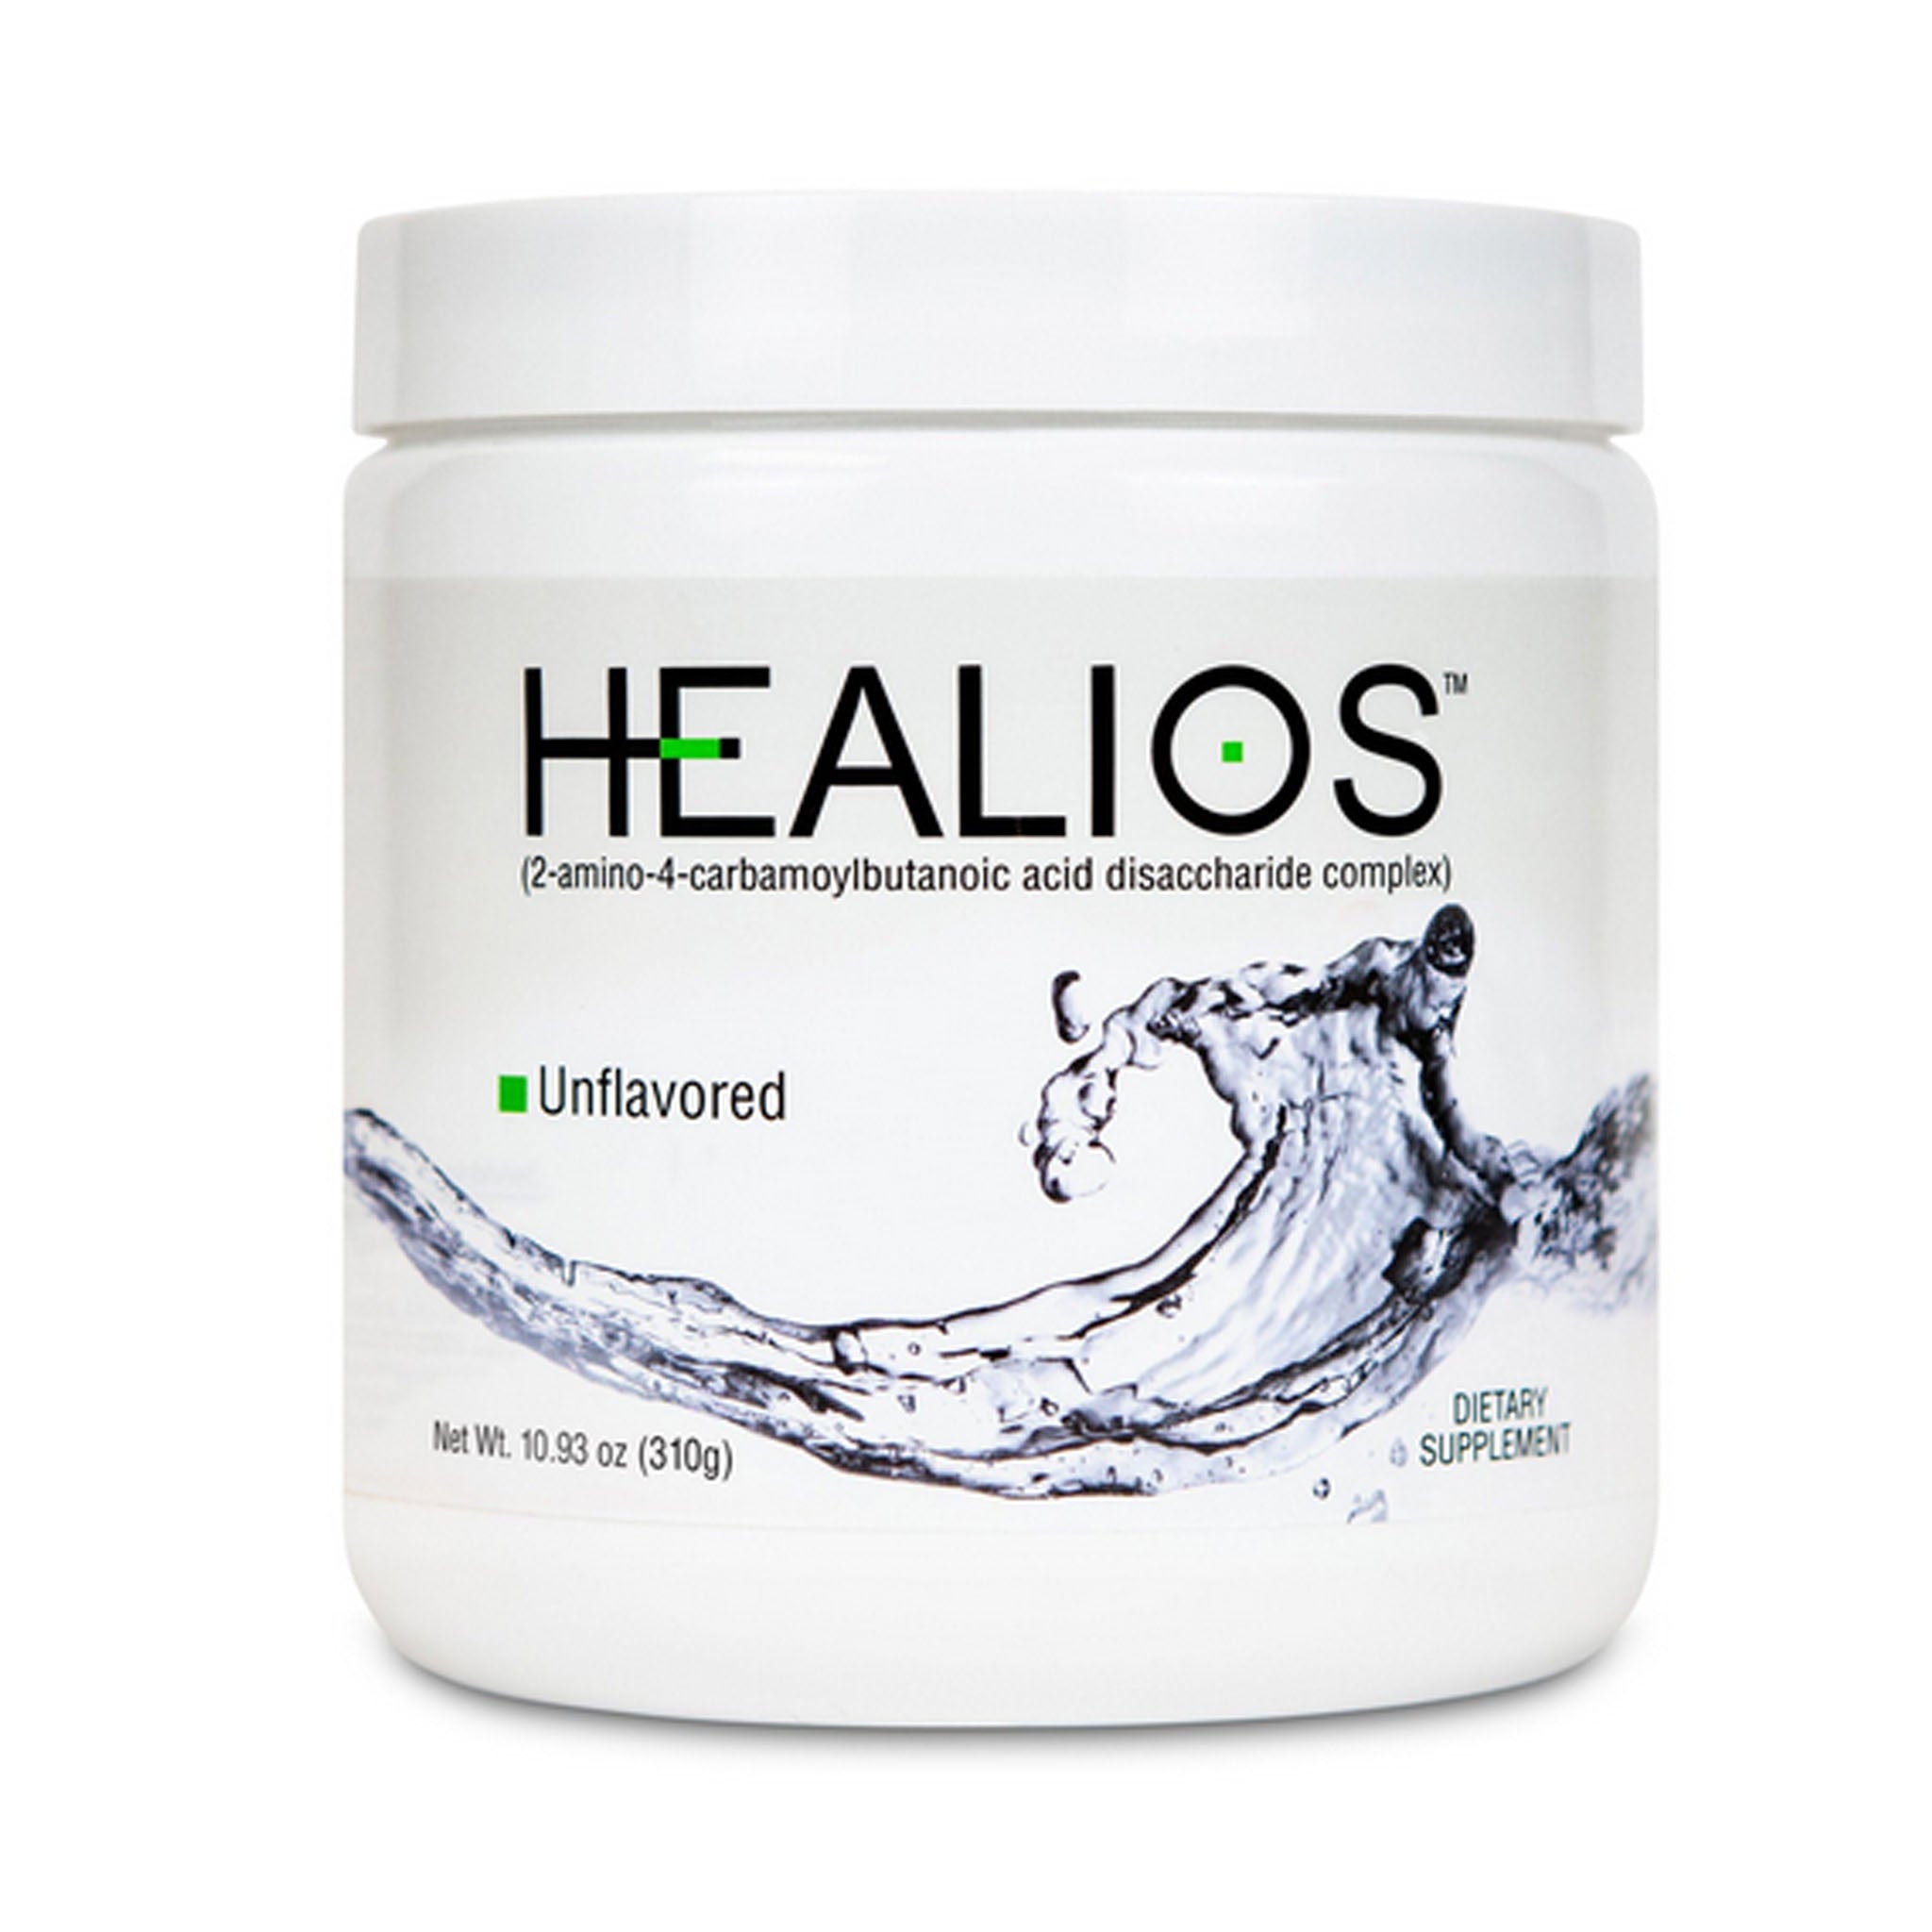 Healios Oral Health Supplement Powder Jar